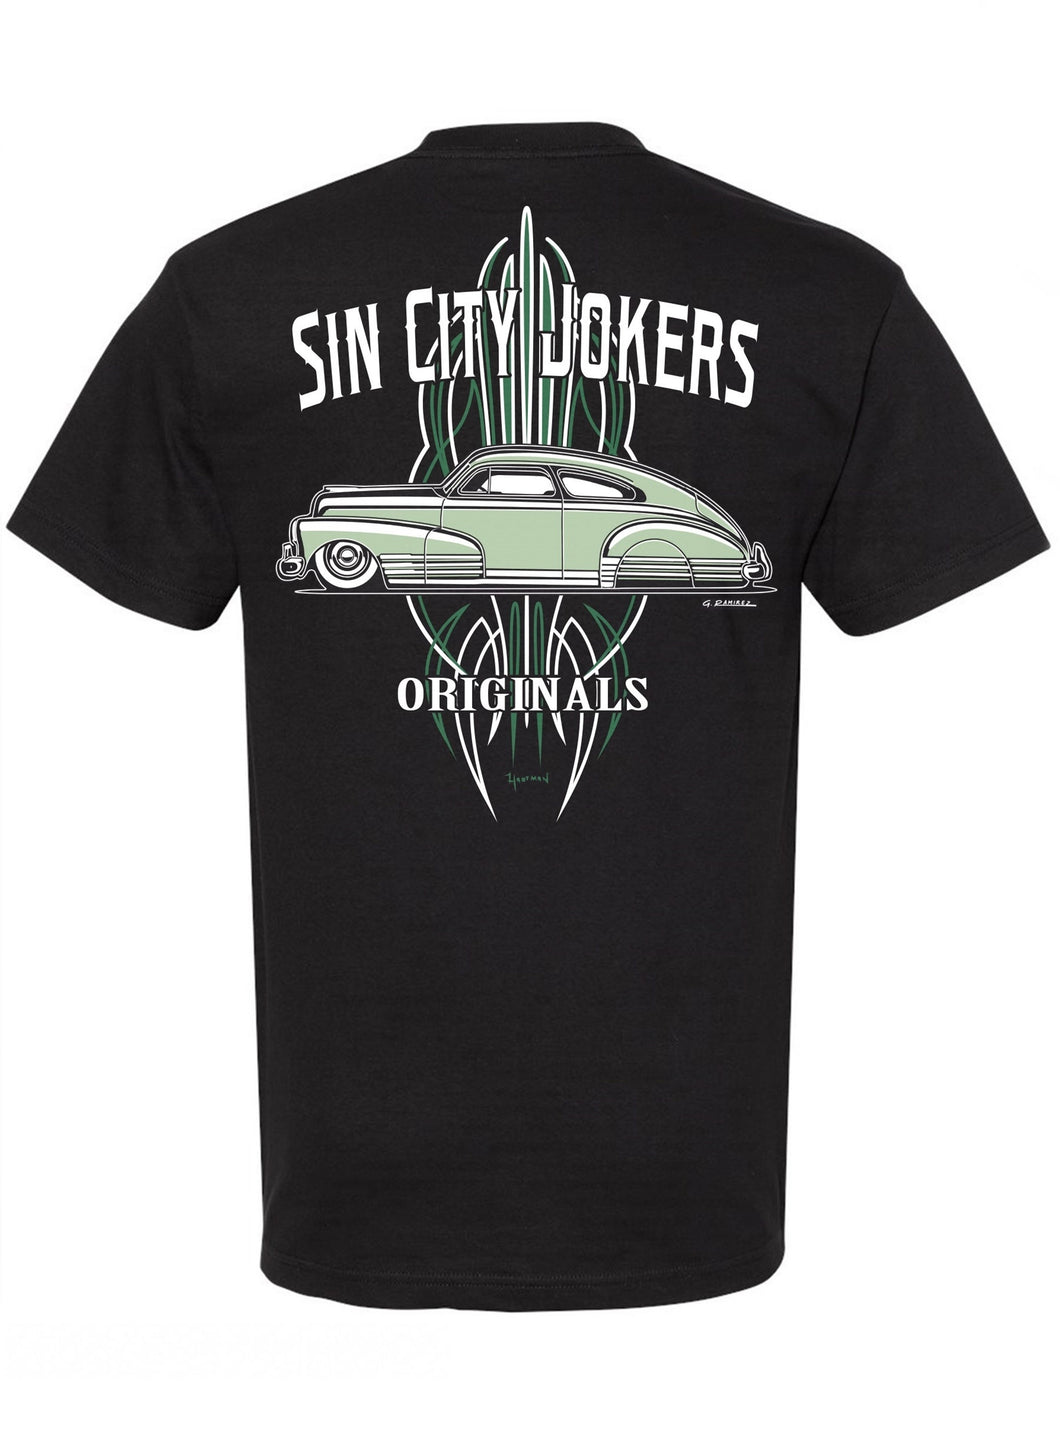 Sin City Jokers Originals '48 Men's Tee